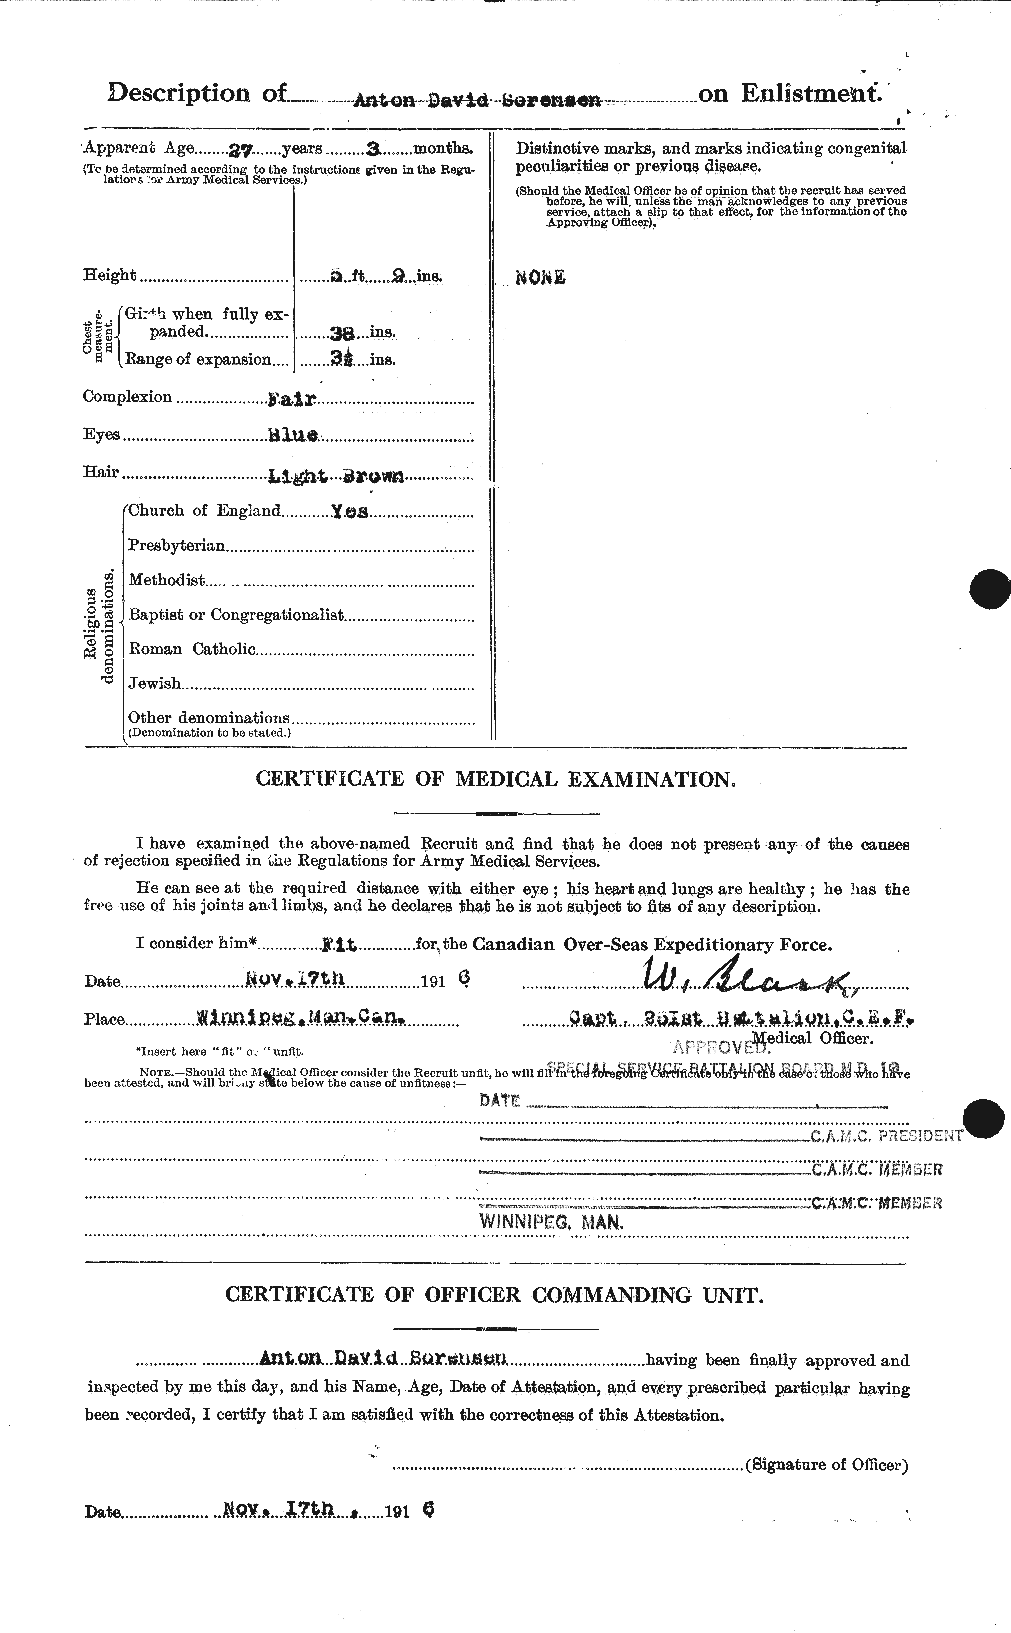 Dossiers du Personnel de la Première Guerre mondiale - CEC 110168b